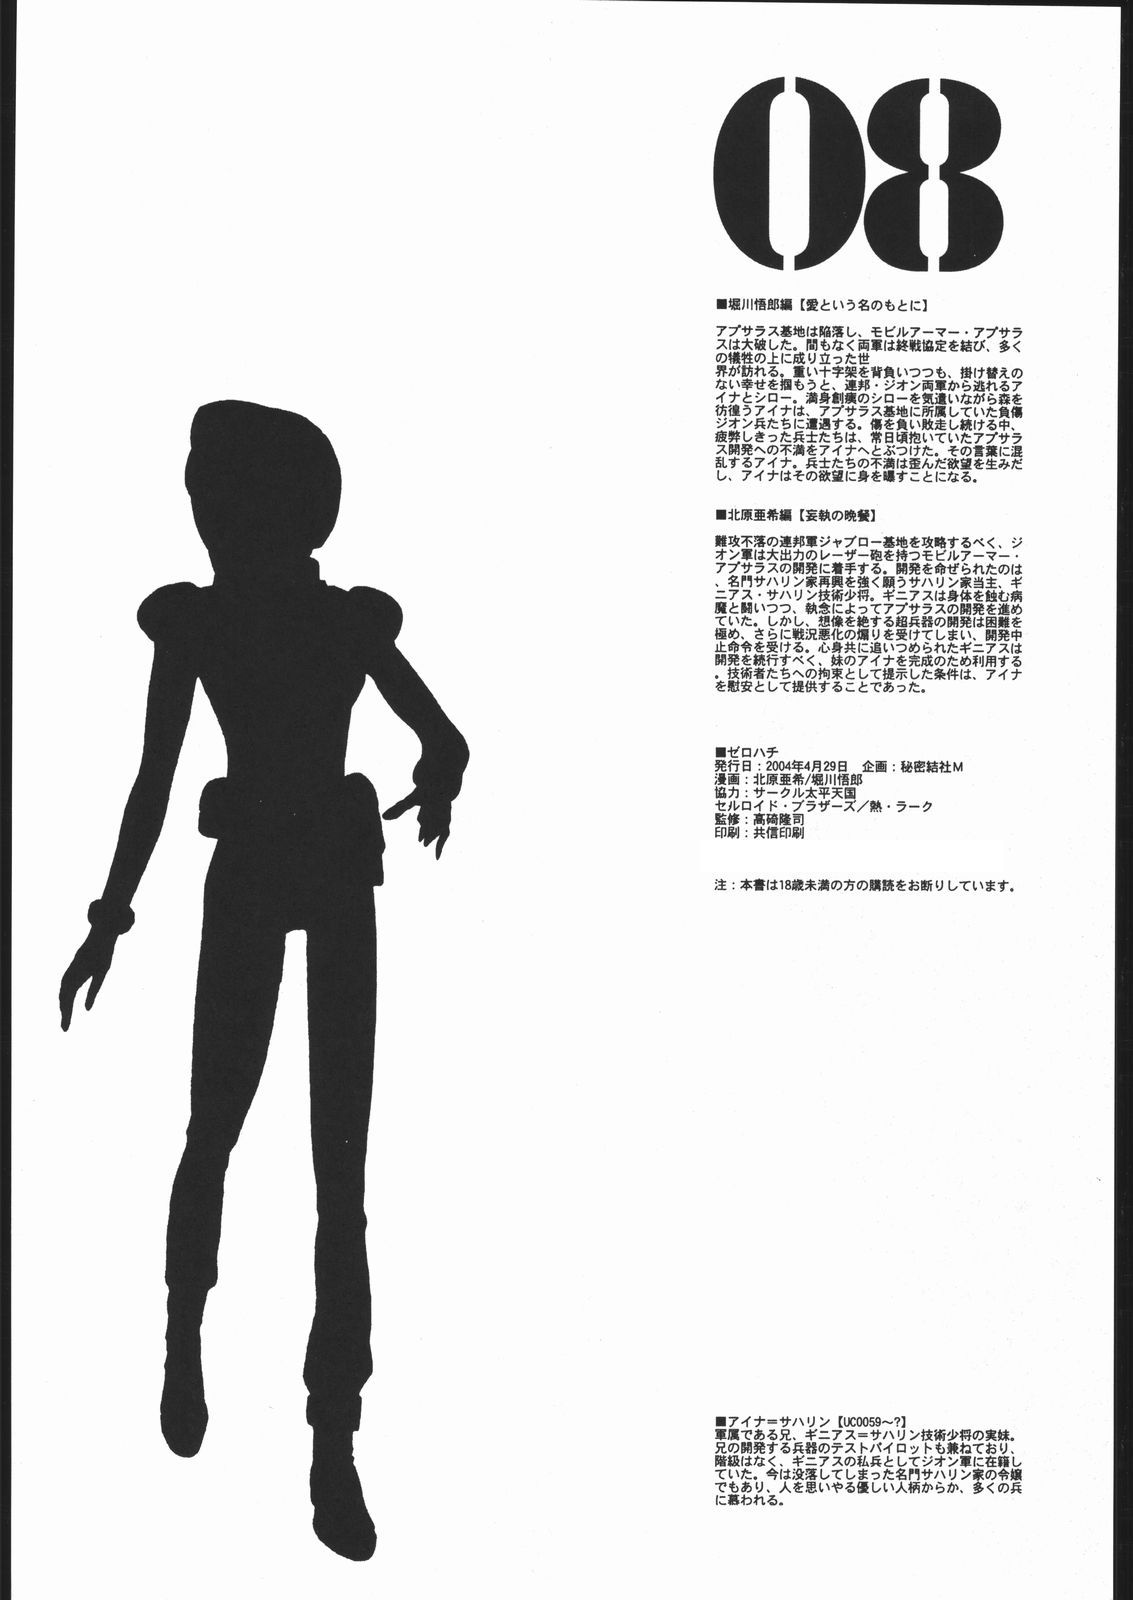 [Gundam] 08 (Secret Society M) [秘密結社M] 08